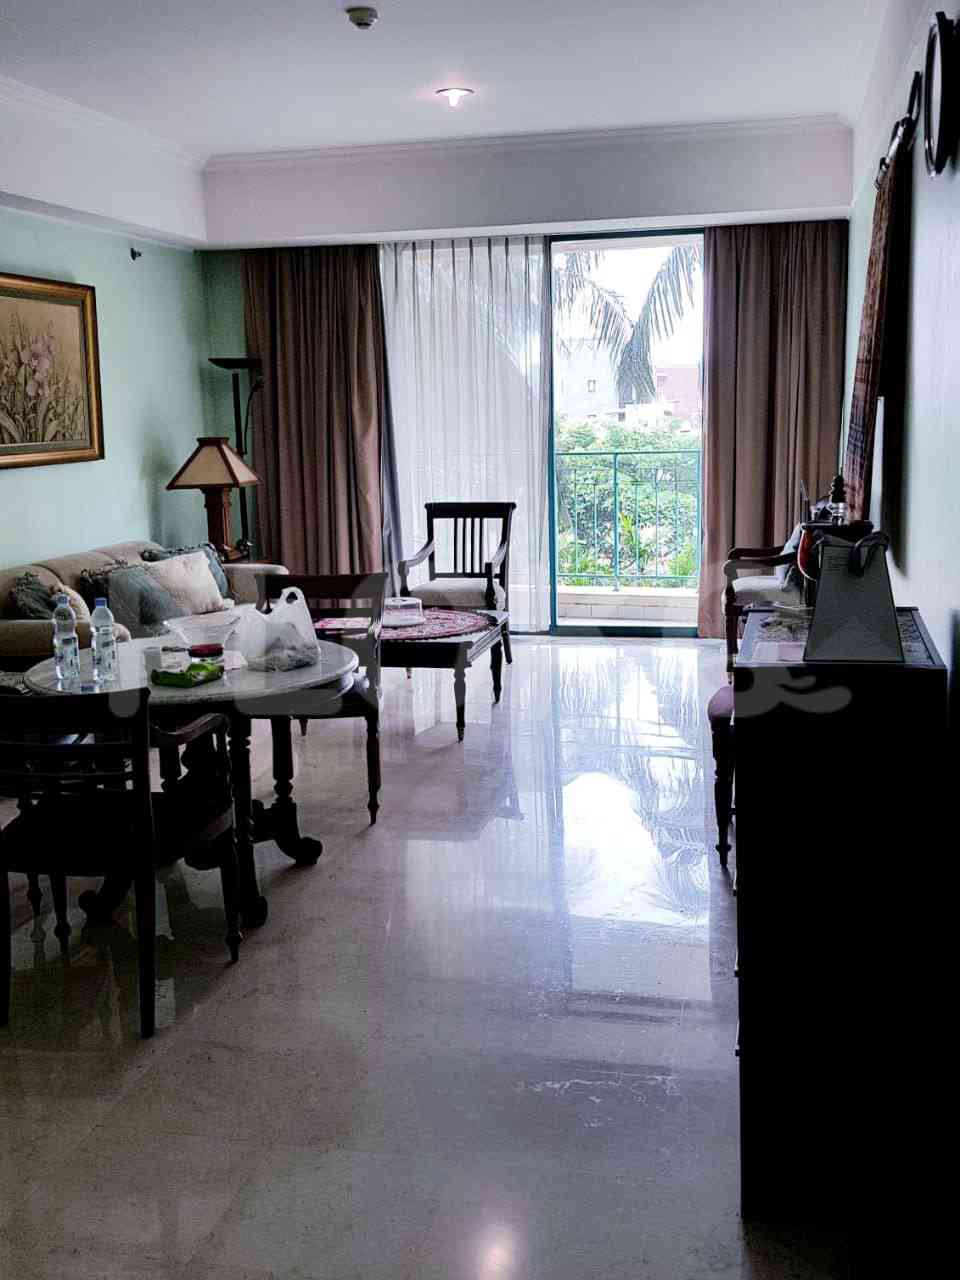 1 Bedroom on 3rd Floor for Rent in Casablanca Apartment - fte547 4